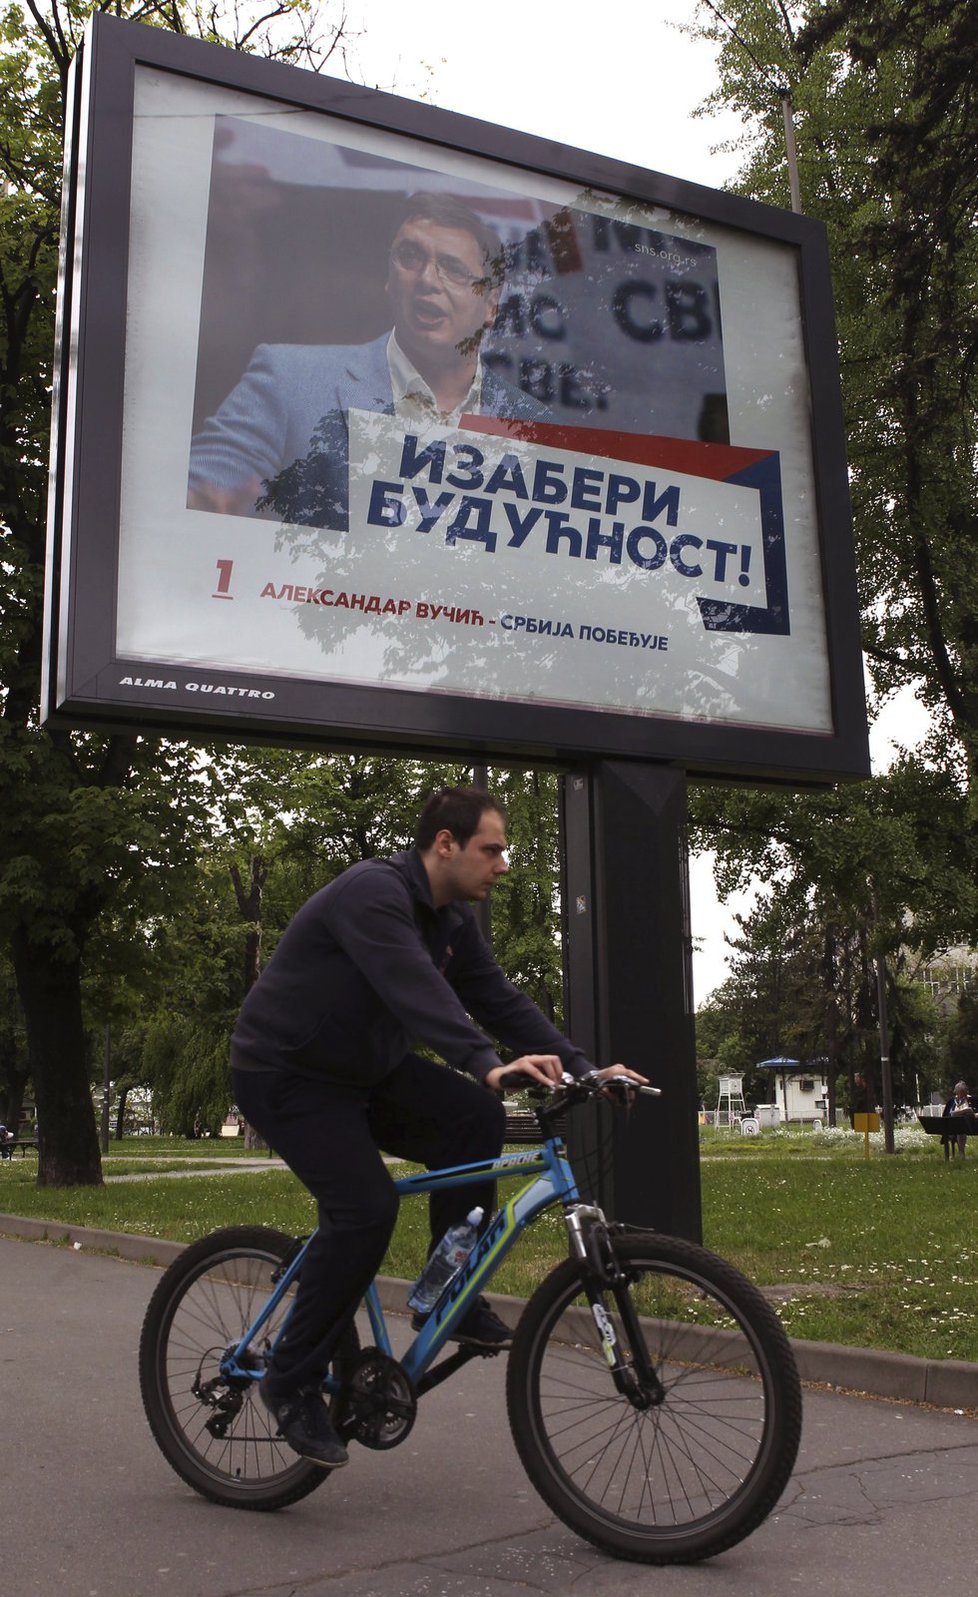 V Srbsku začaly volby, čeká se vítězství Srbské pokrokové strany (SNS) premiéra Aleksandara Vučiće.